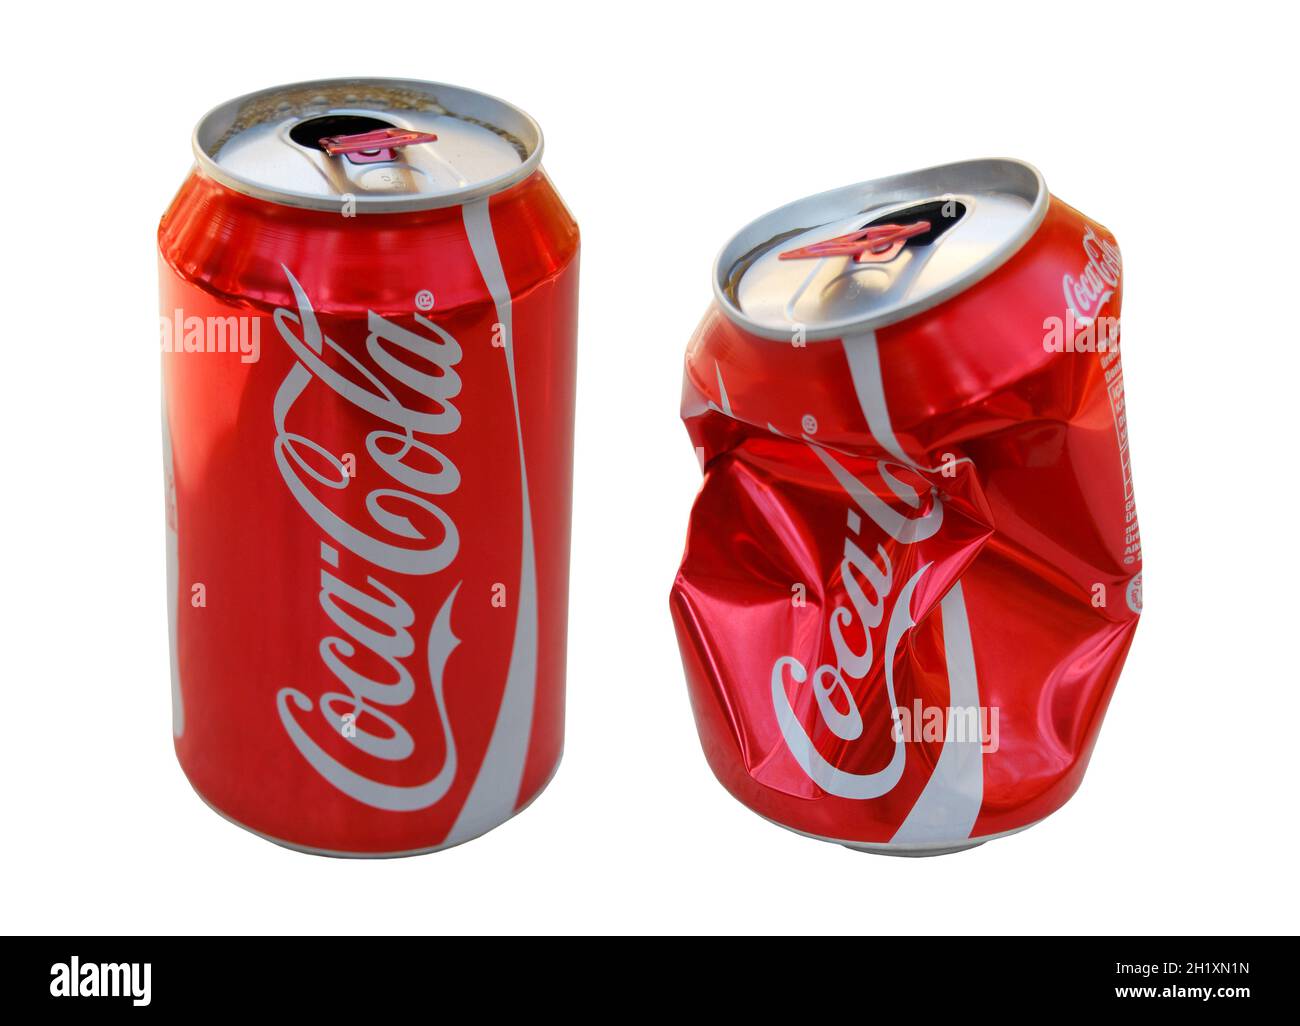 The world's most drinking cola brand, Coca Cola, red colored aluminum Coca Cola box Stock Photo